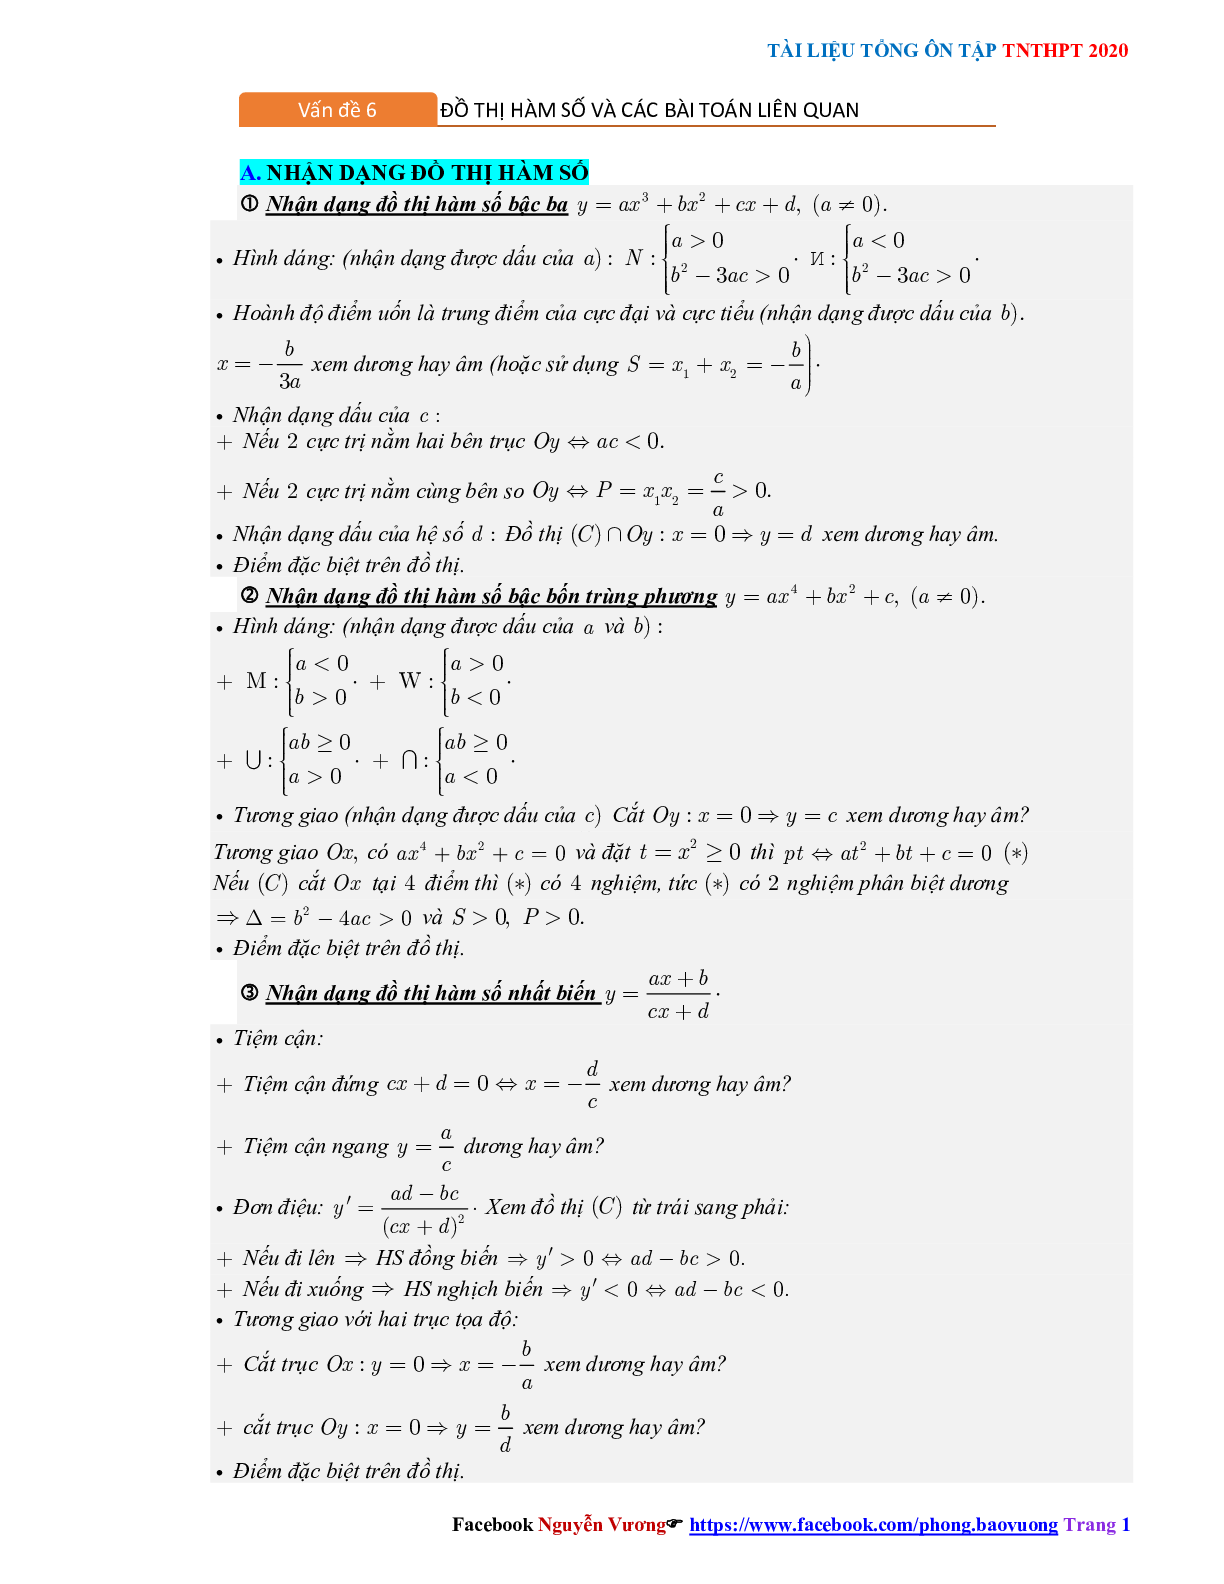 Các dạng bài tâp về Đồ thị hàm số có đáp án (trang 1)